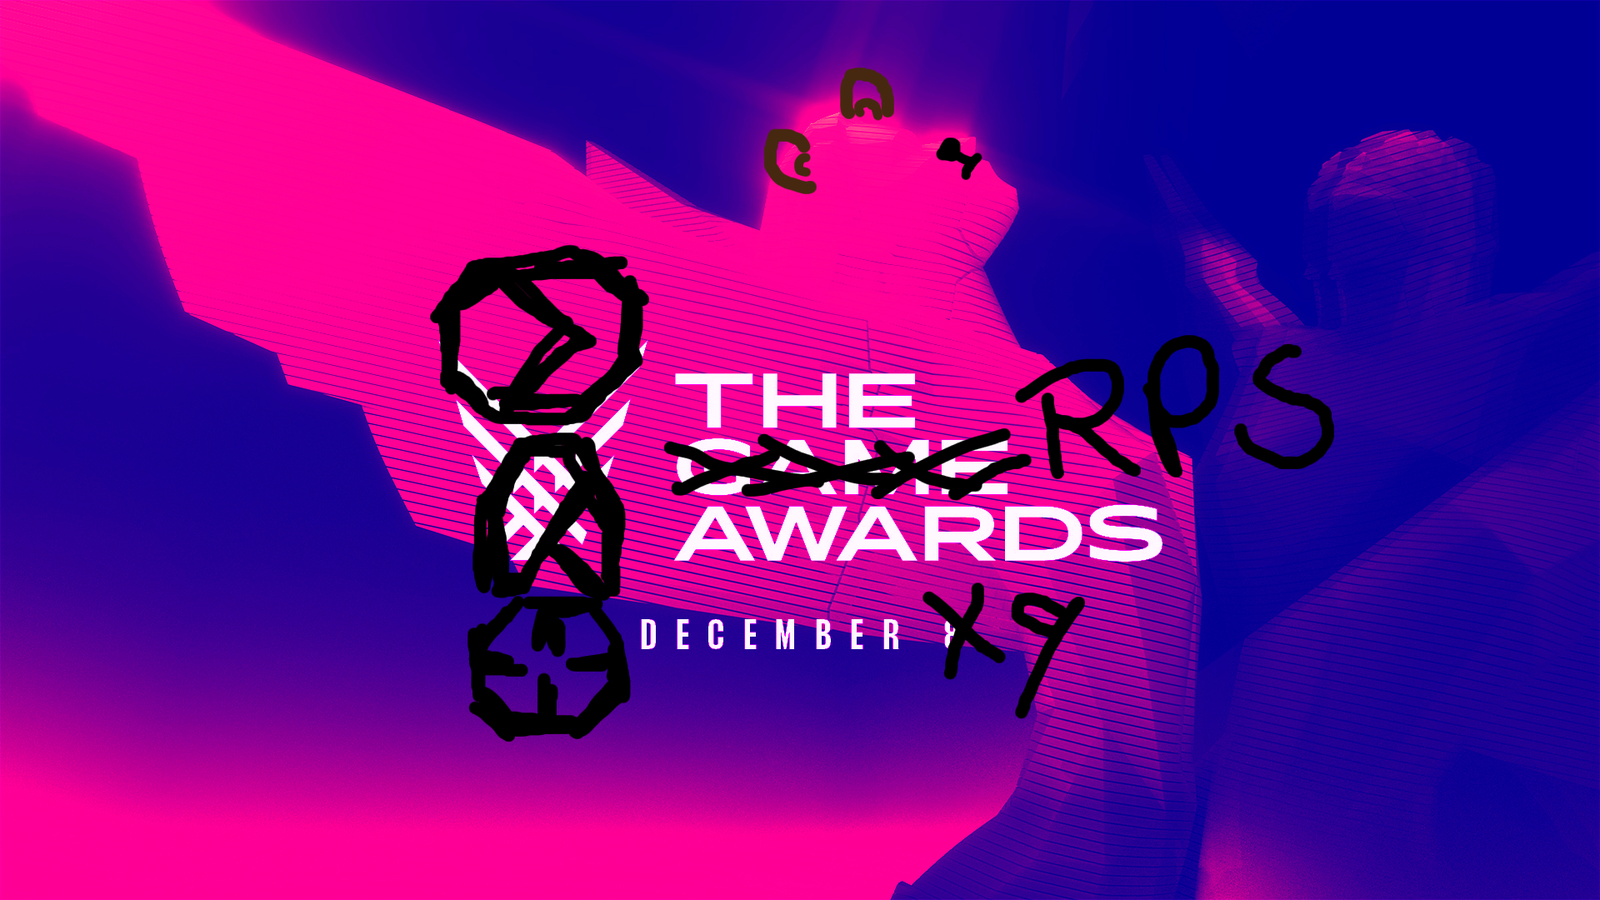 VG247's Alternate Game Awards 2021